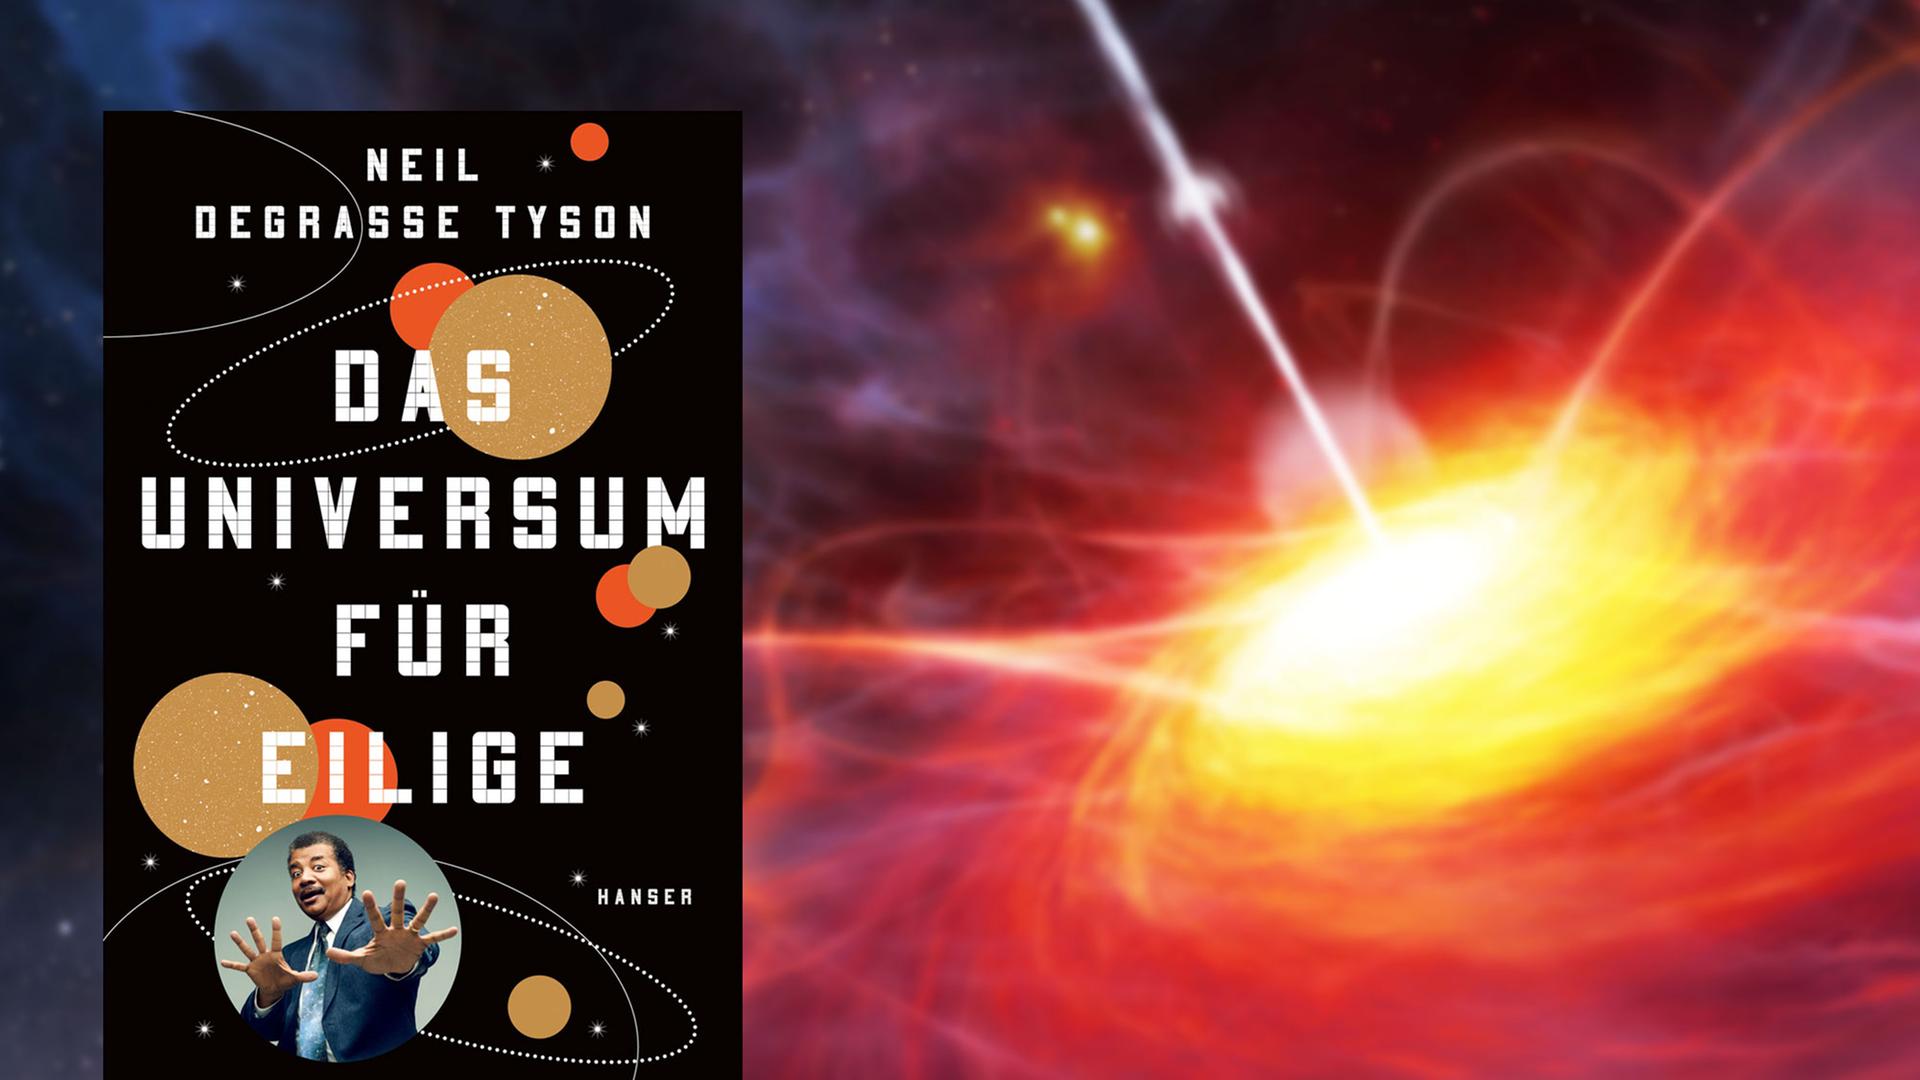 Buchcover "Das Universum für Eilige" von Neil deGrasse Tyson, im Hintergrund die Darstellung eines kosmische Leuchtfeuers